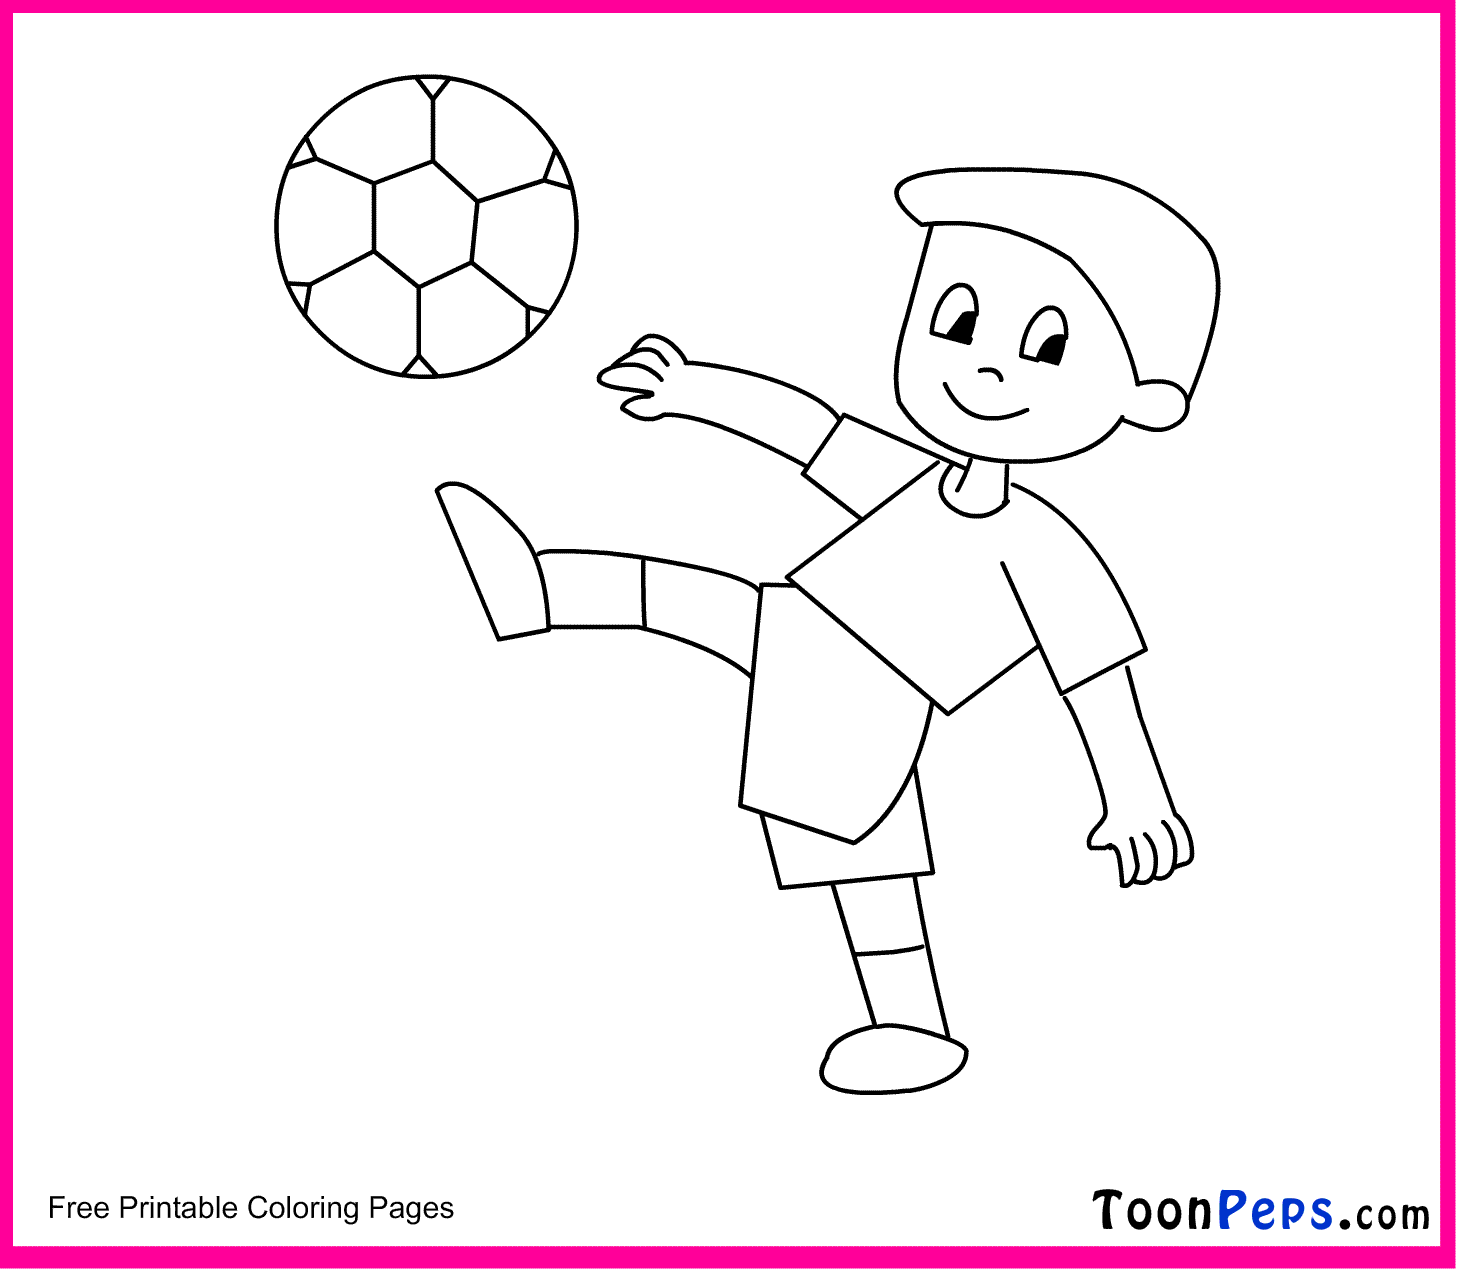 Рисунок рисовать играть. Рисунок на тему футбол. Рисунки на футбольную тему для детей. Футбол рисунок для детей. Футбол рисунок для детей лёгкий.